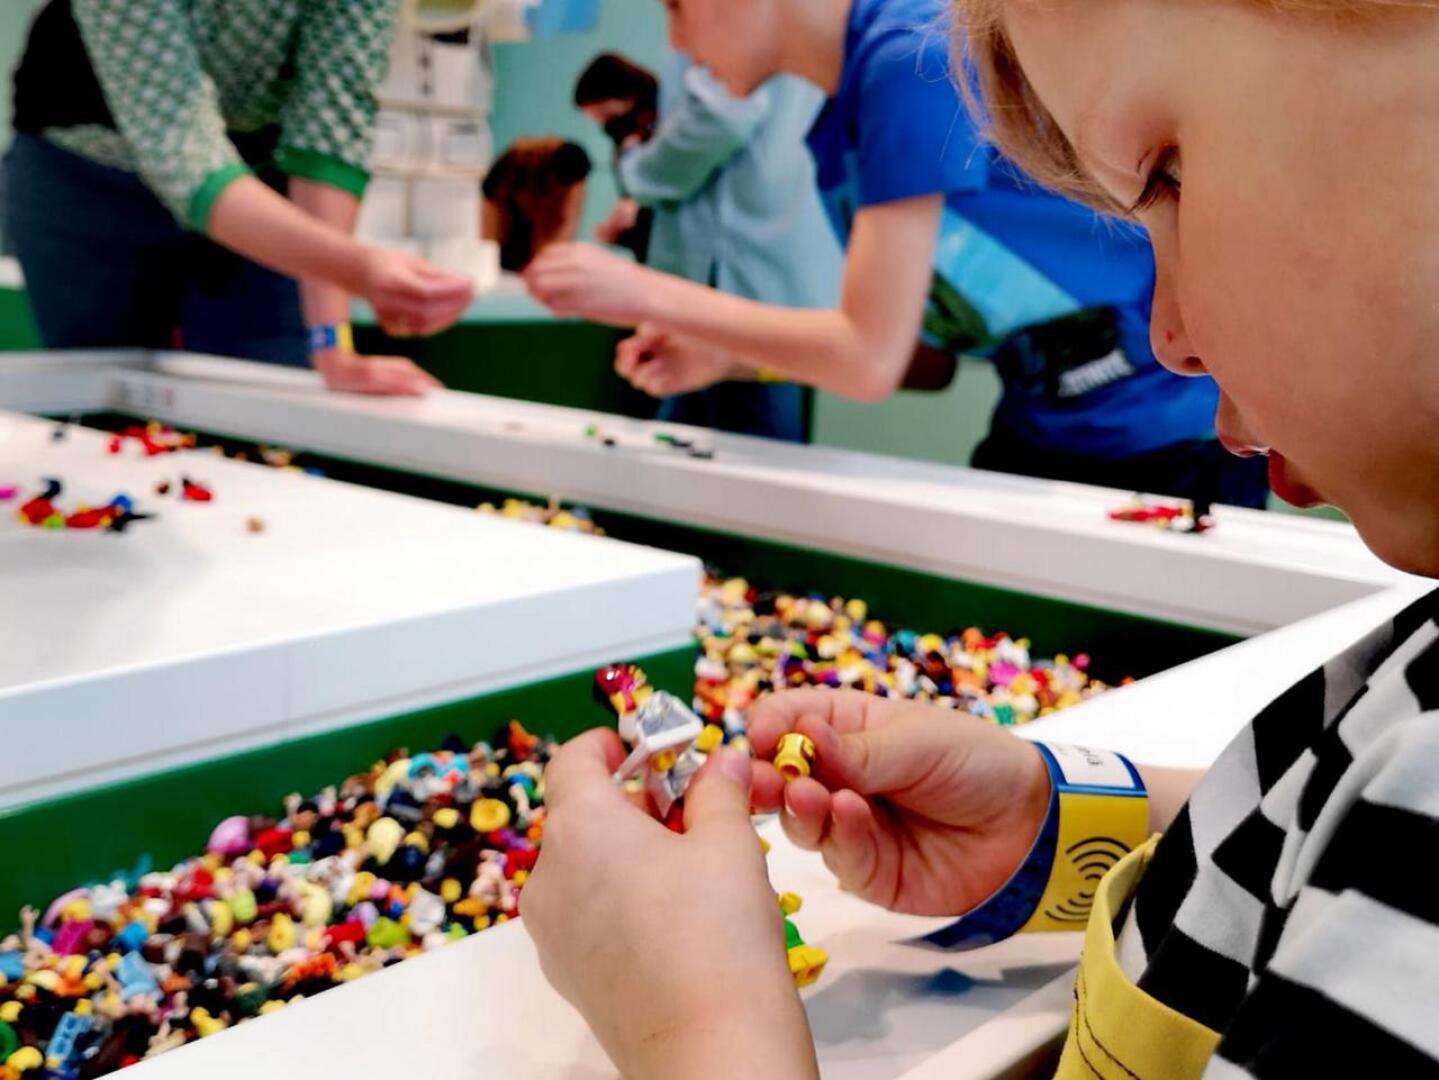 Lego Housessa lasten luovuus pääsee kukoistamaan. Legoilla rakentamassa Touko Mäkelä.